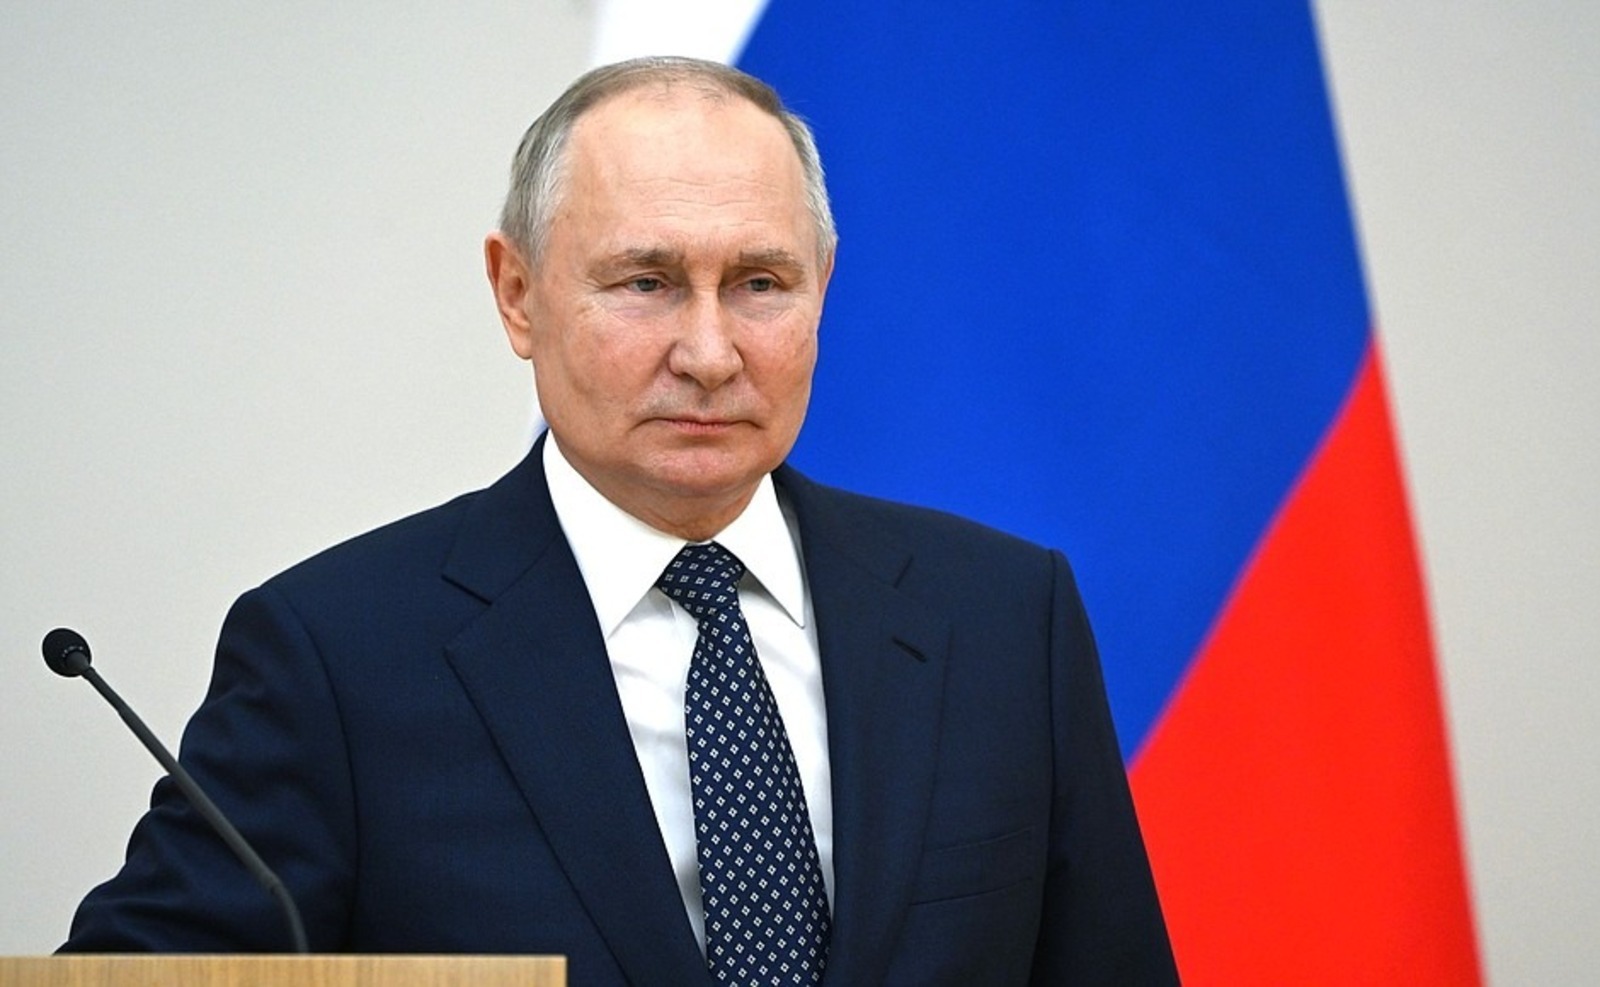 Владимир Путин провёл встречу с представителями избирательных комиссий России